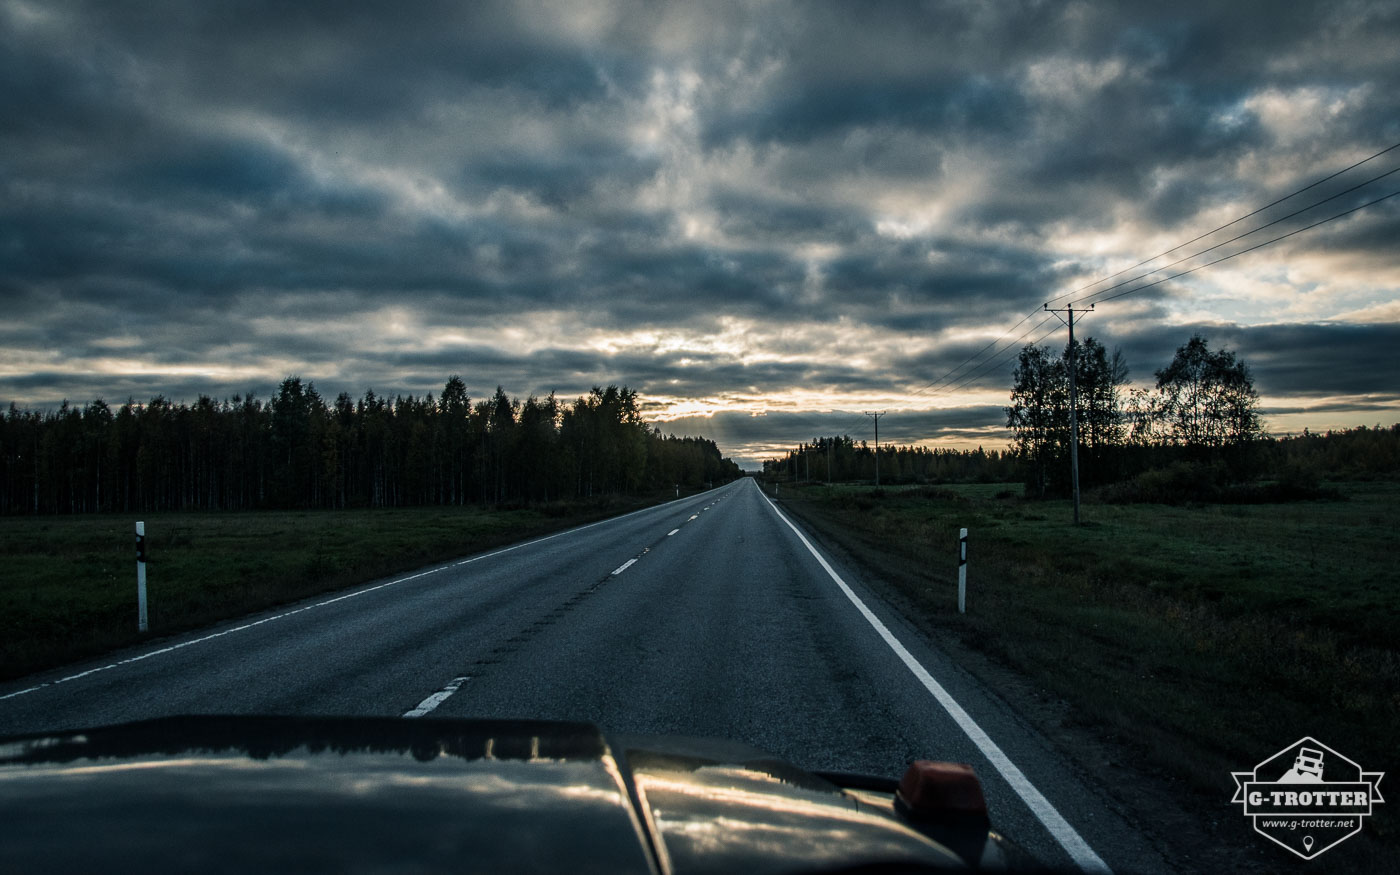 Bild 5 der Bildergalerie “Straßen von Finnland”